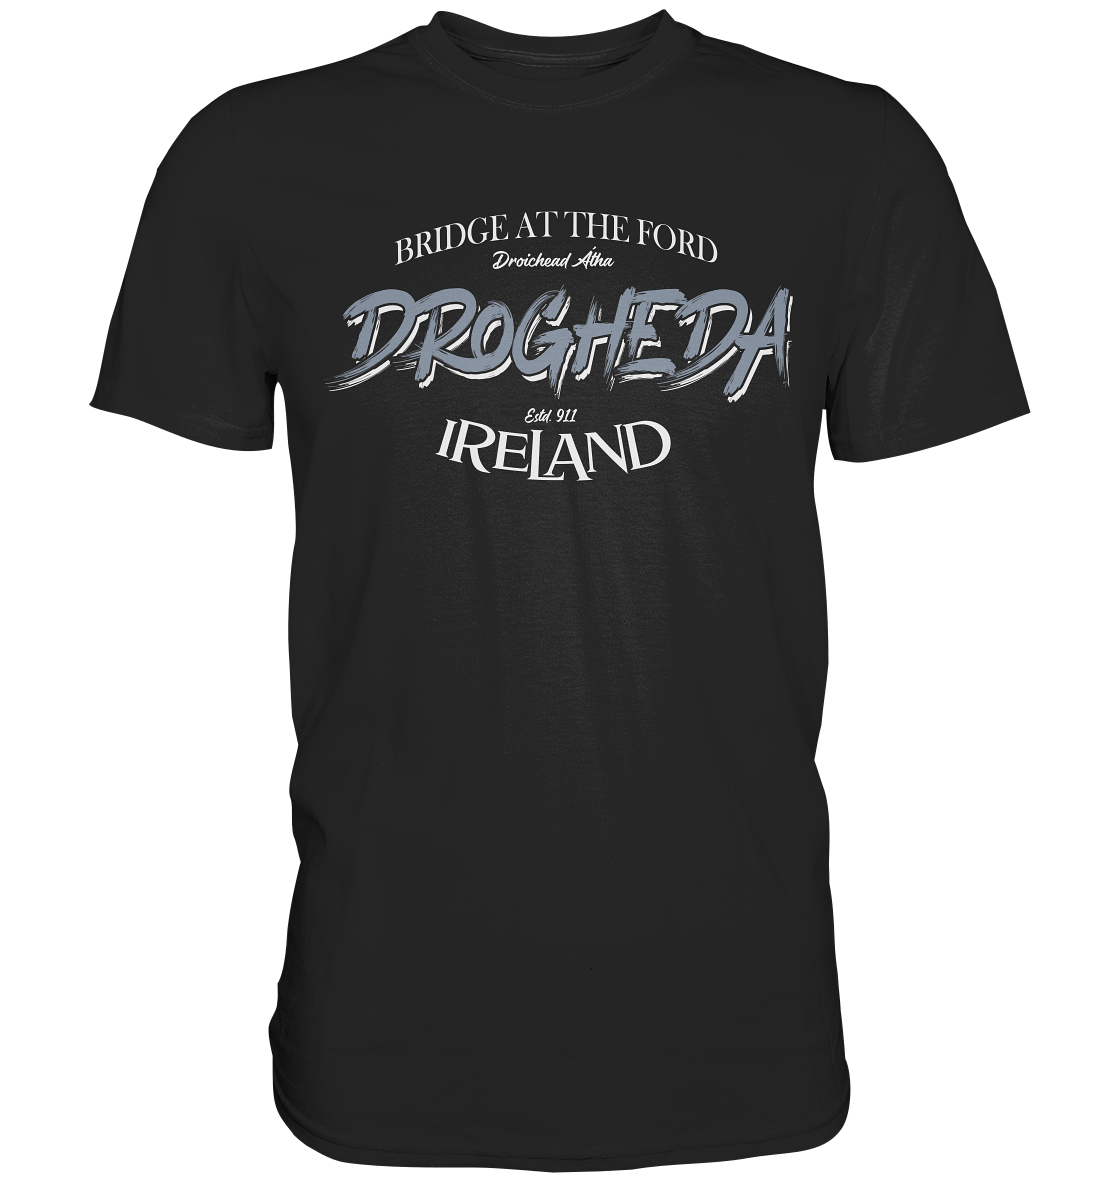 Drogheda "Bridge At The Ford" - Premium Shirt